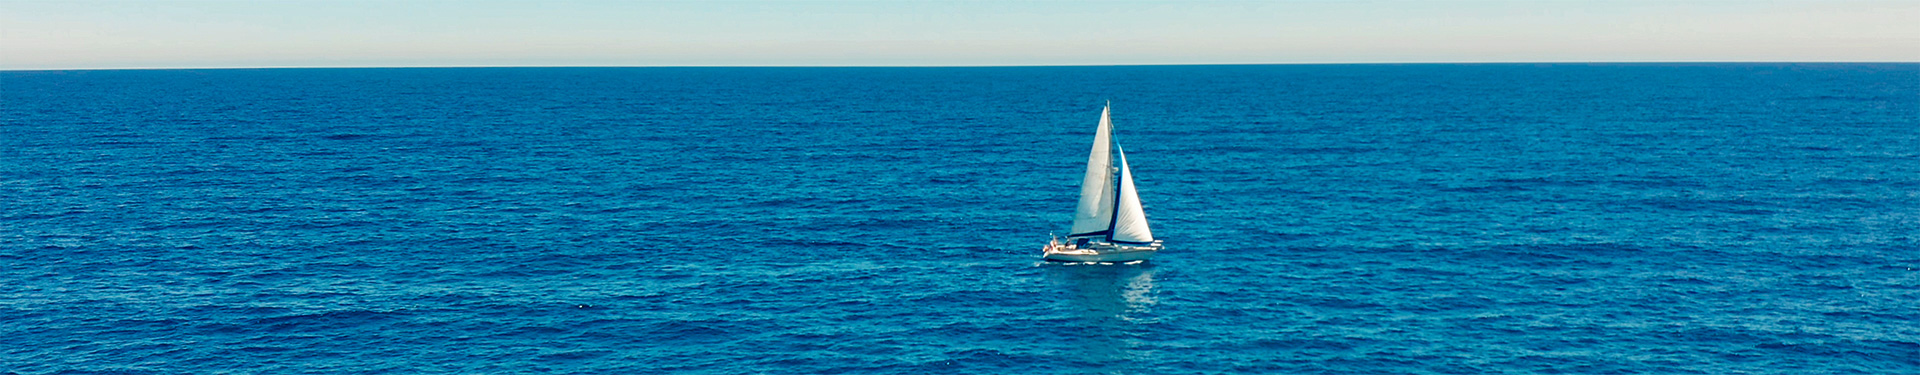 Sailboat on the sea